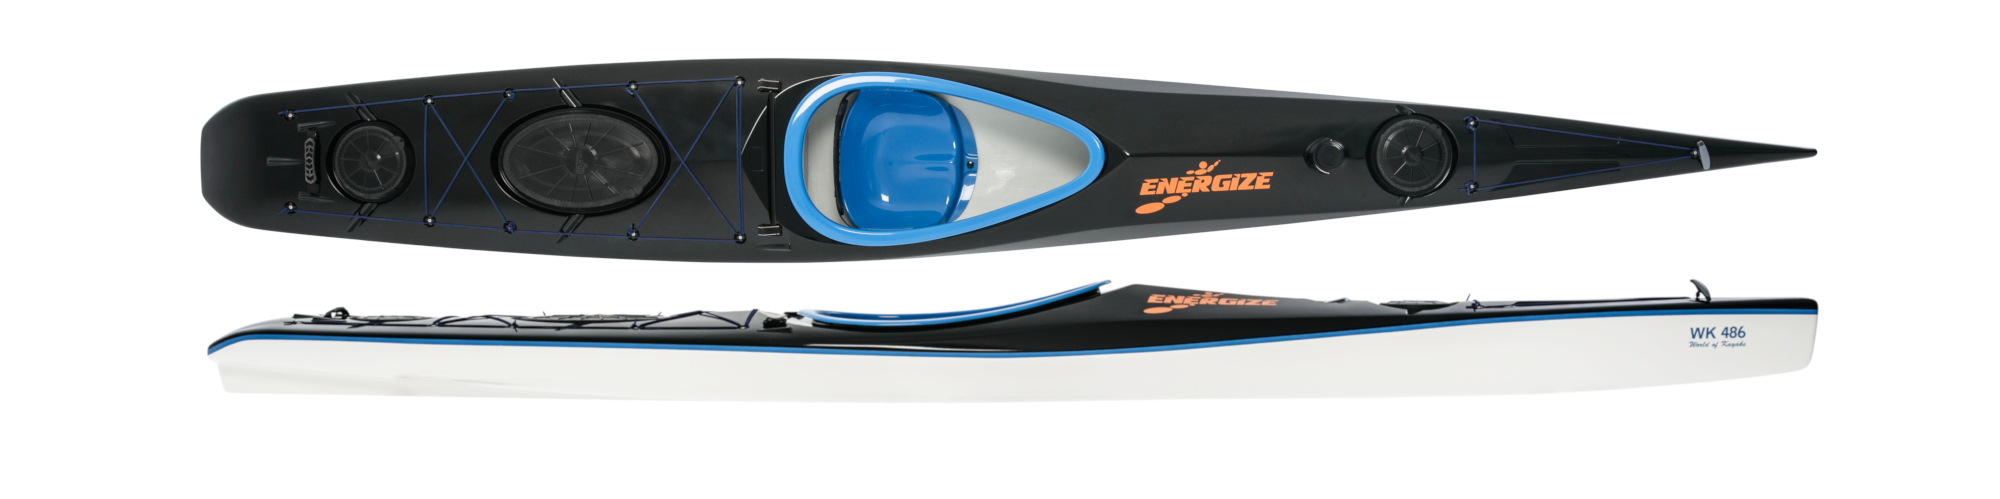 Ergonomic touring kayak WK 486 Energize